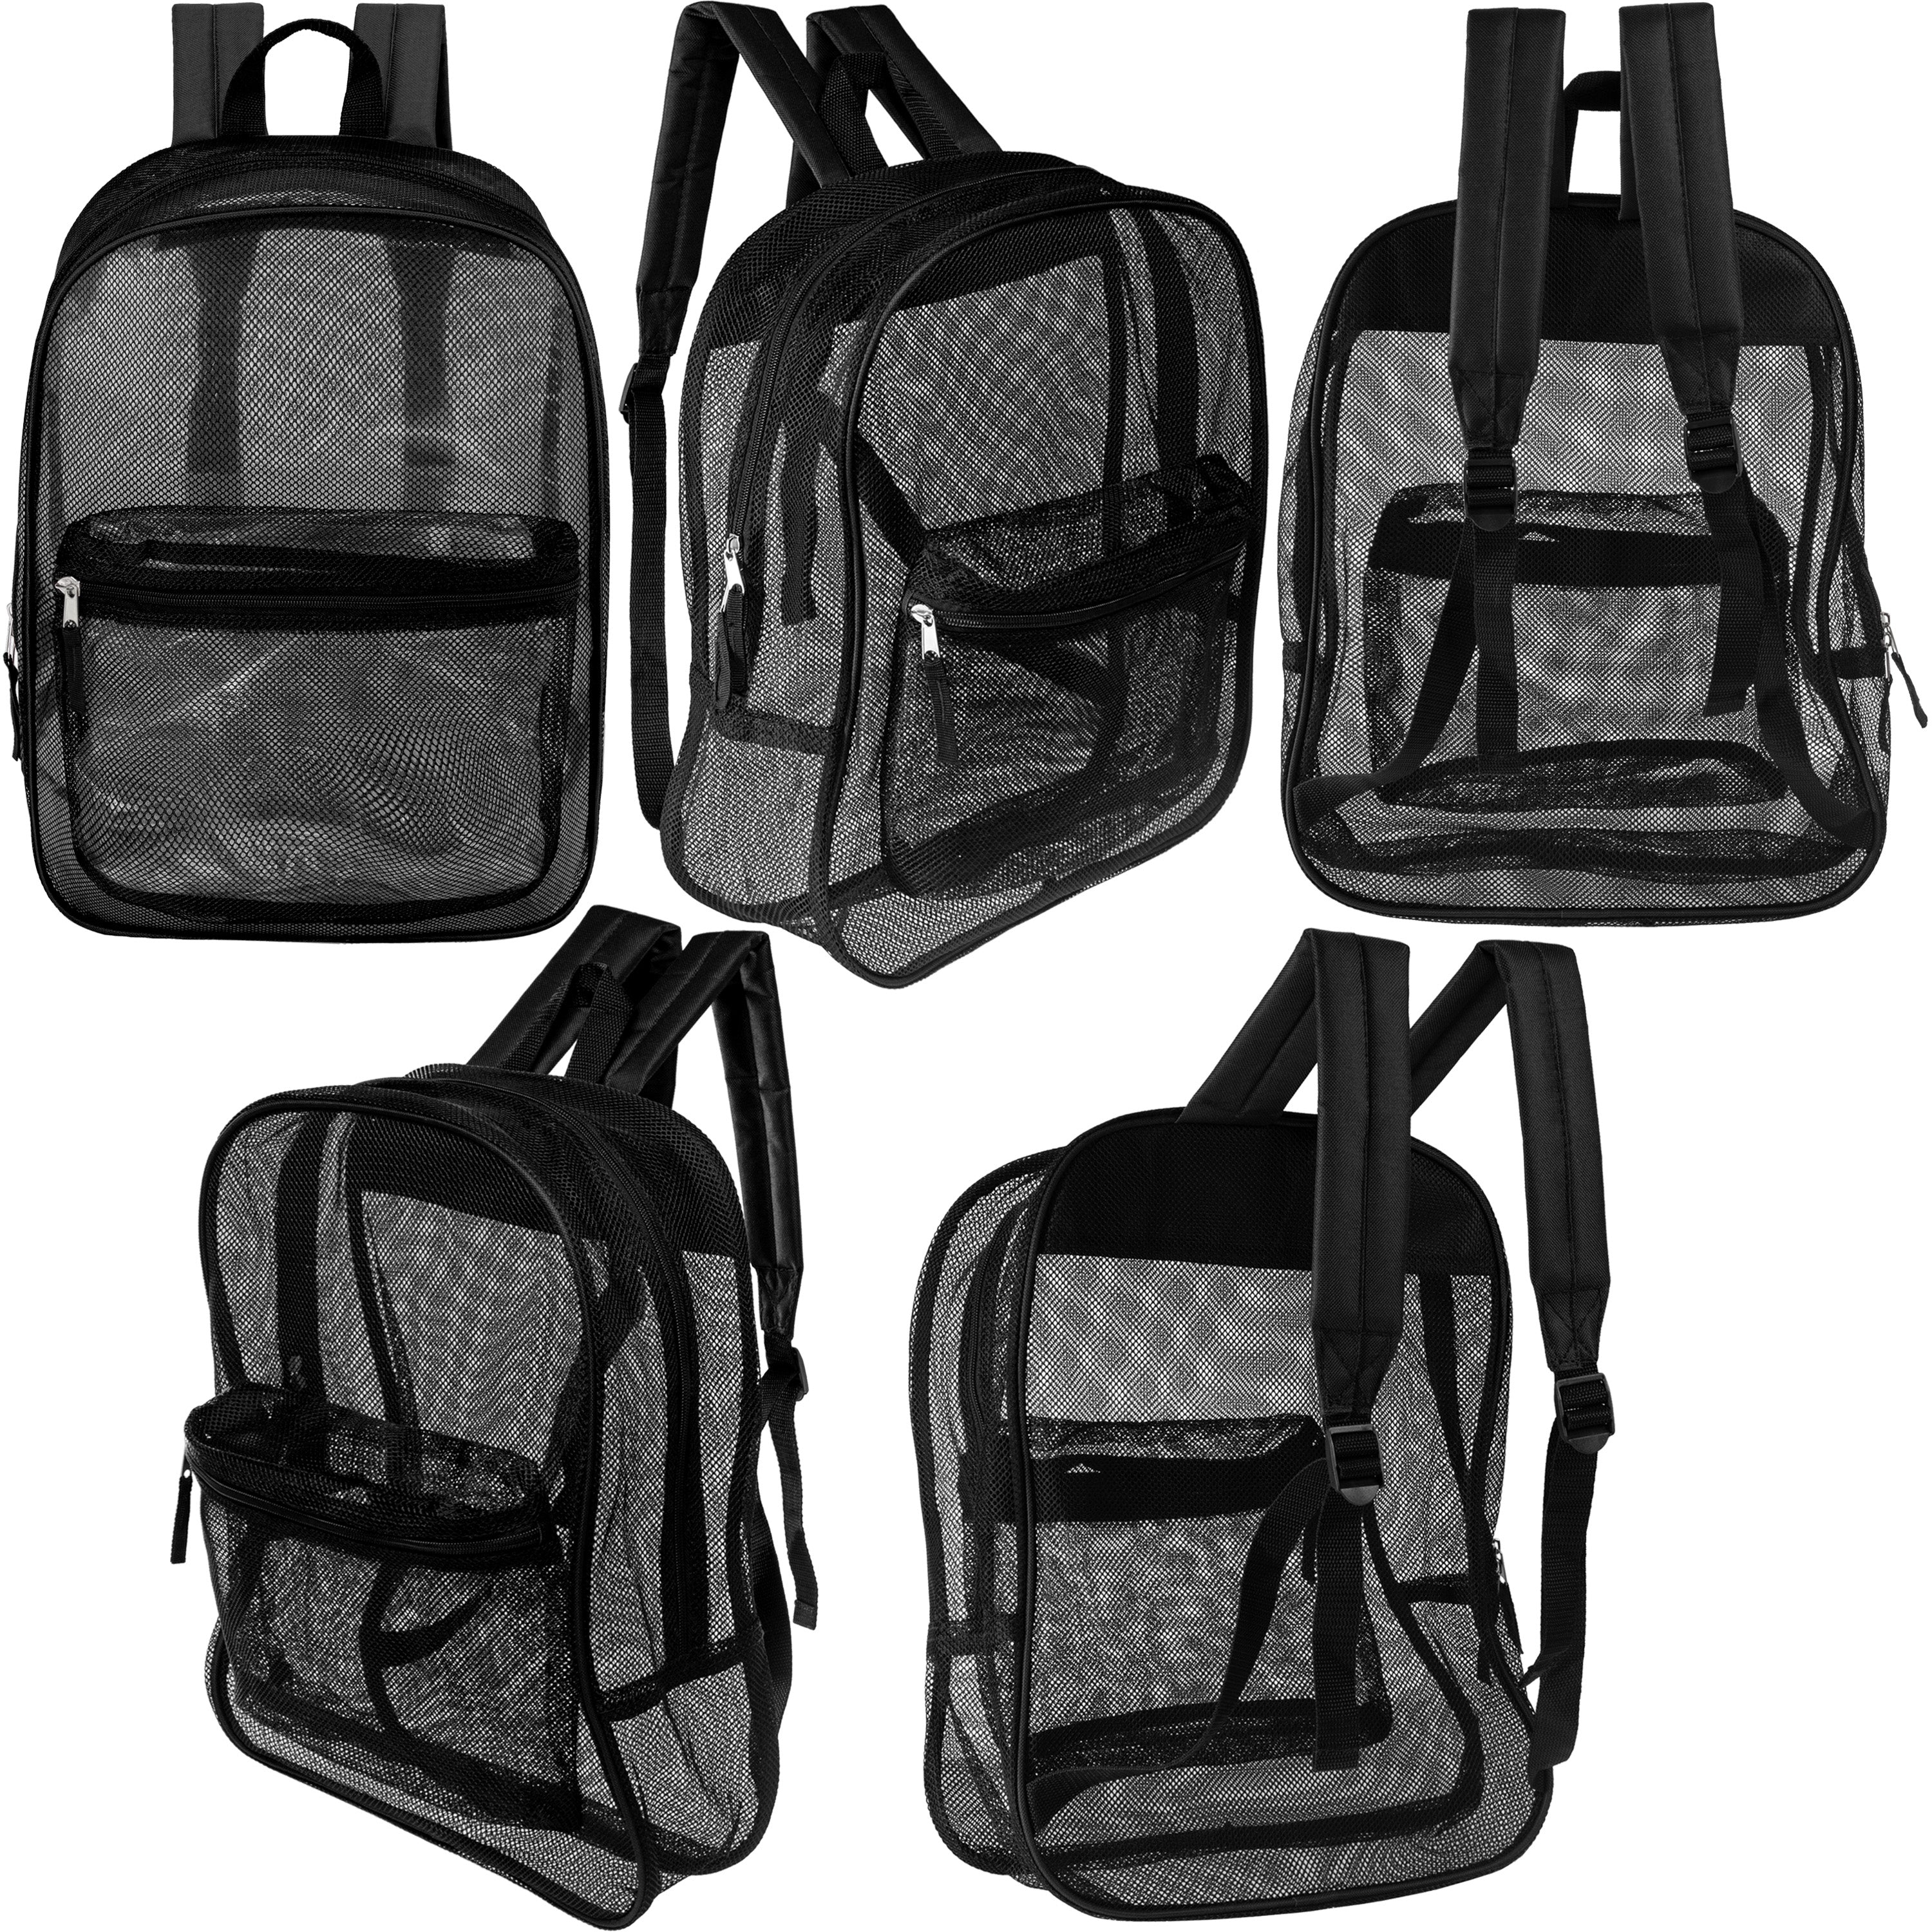 17" Wholesale Mesh Backpack in Black for School - Bulk Case of 24 Black Mesh Bookbags